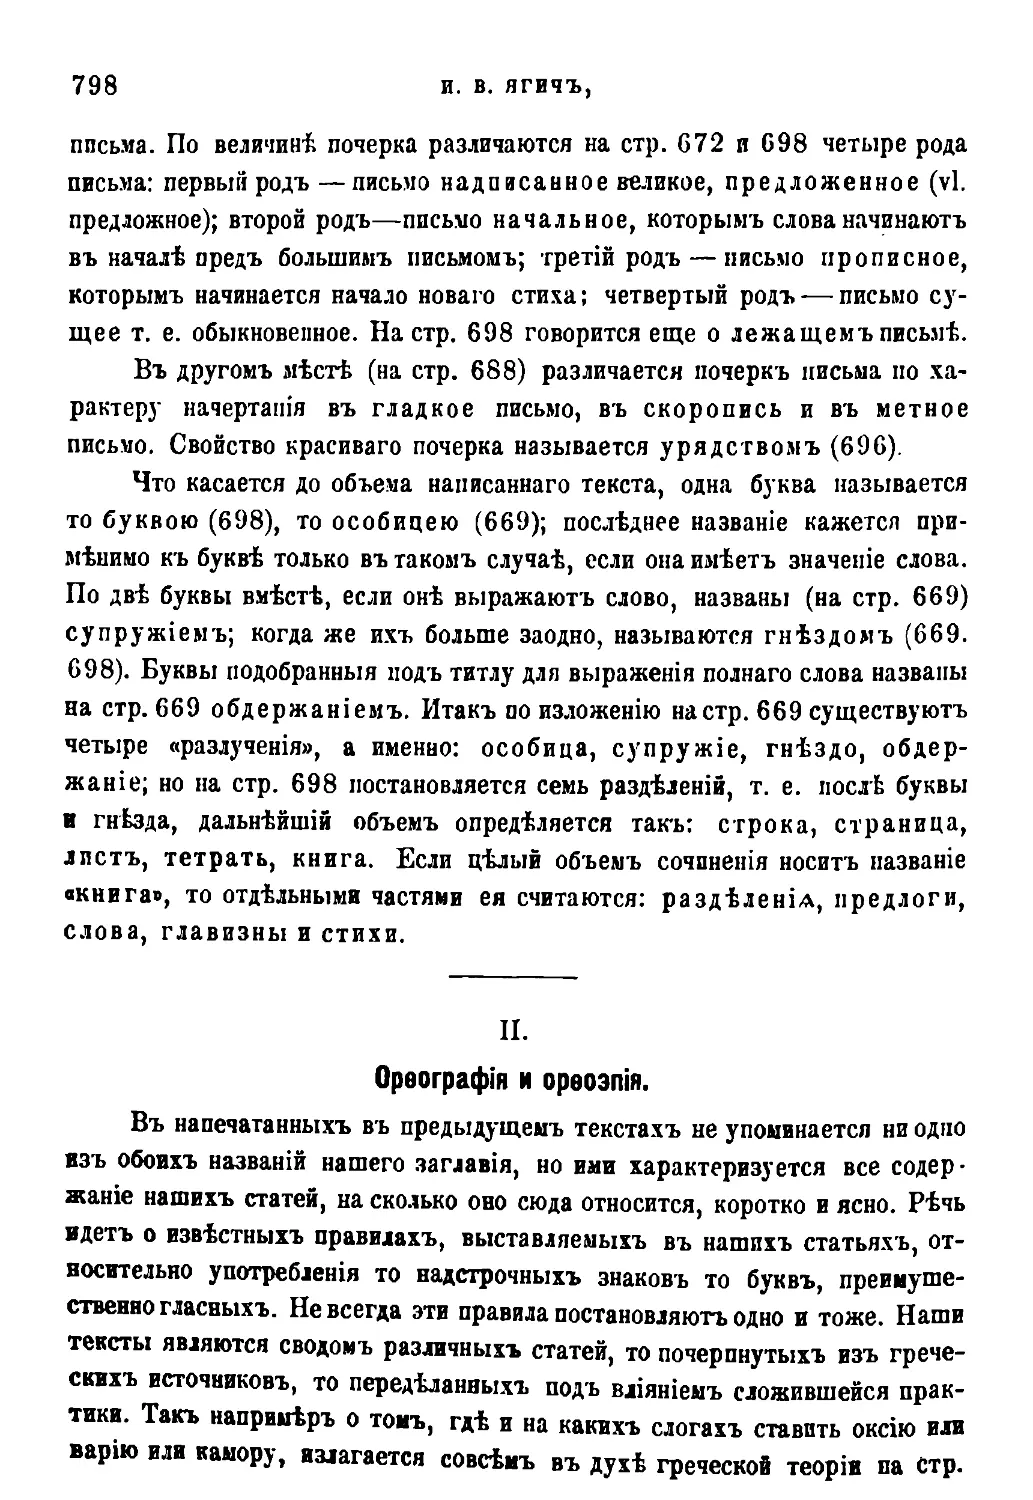 II. Орфография и орфоэпия [510/798]